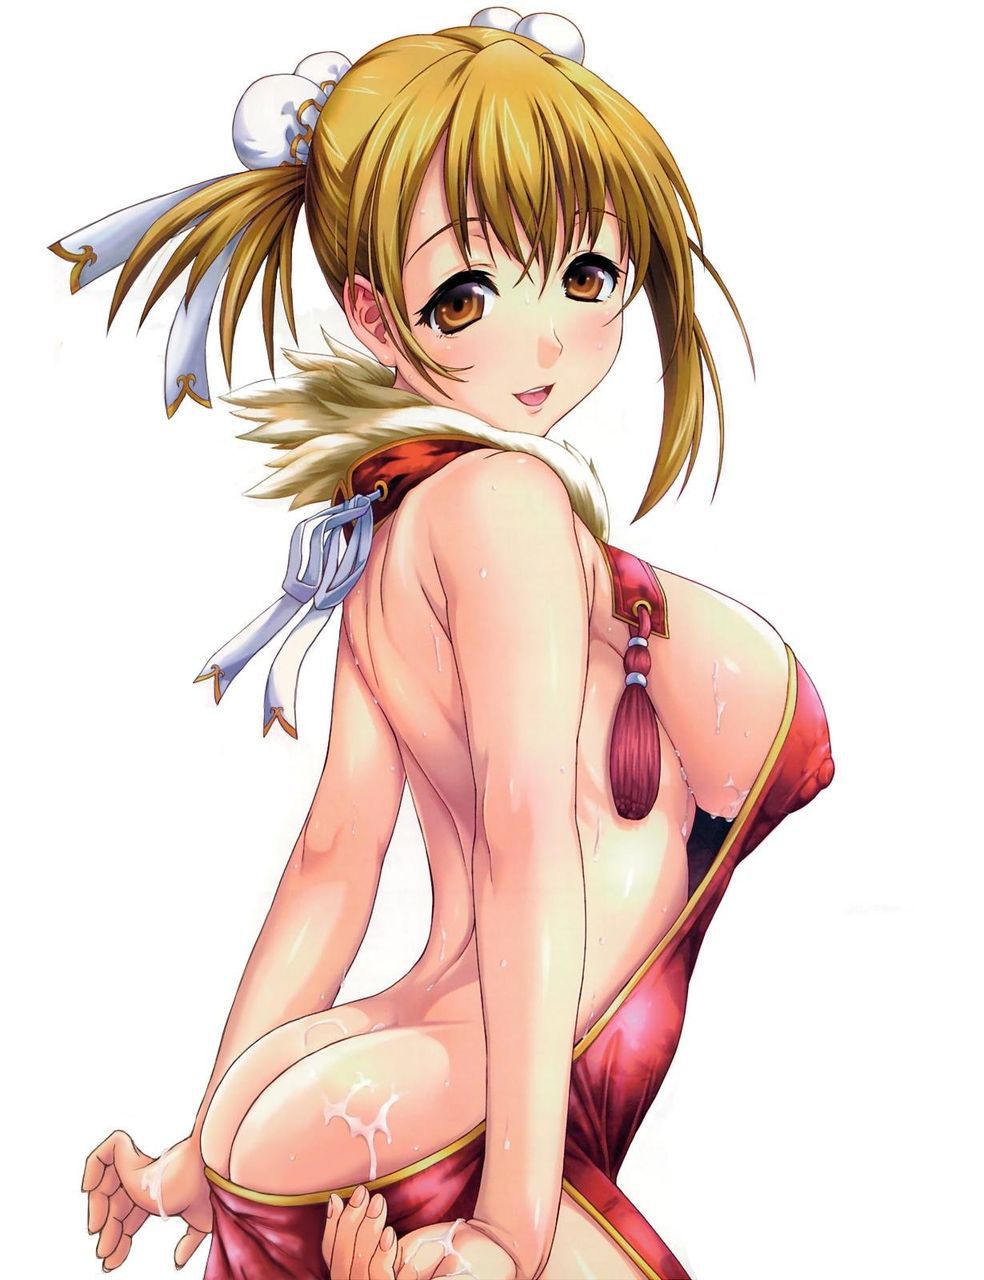 [2次] anime Puni you next breast secondary erotic pictures part II [breasts] 32